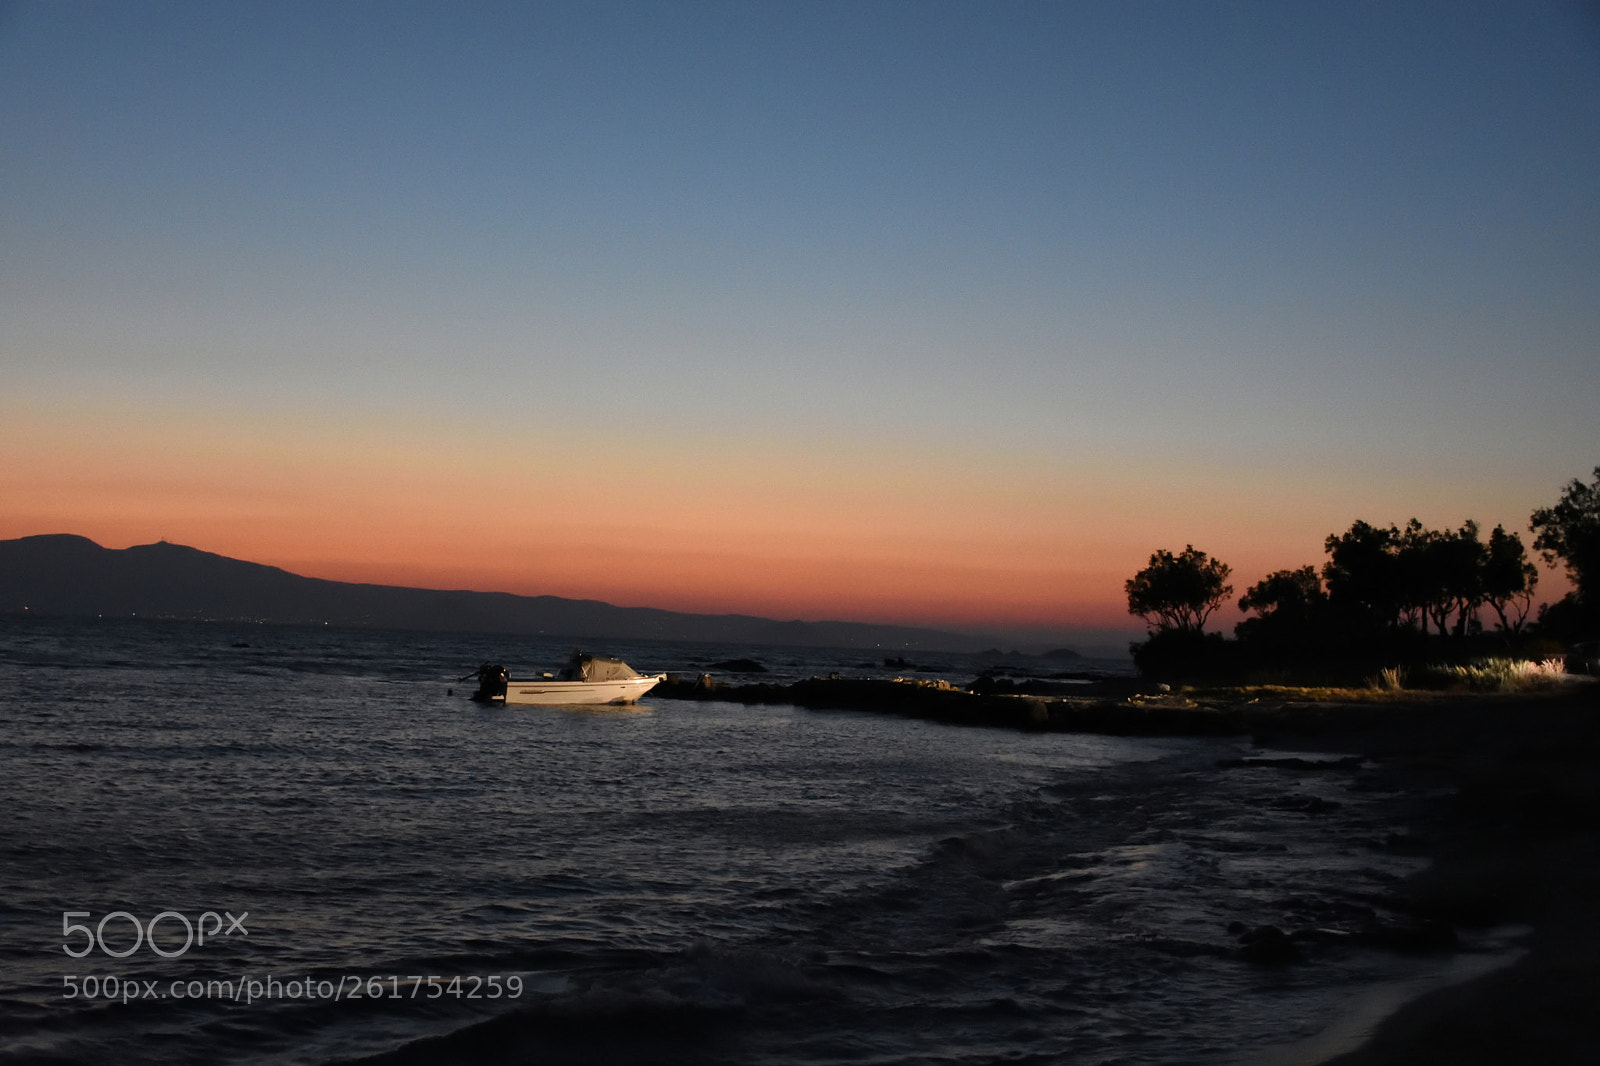 Nikon AF-S DX Nikkor 18-140mm F3.5-5.6G ED VR sample photo. Sunset in naxos-greece photography